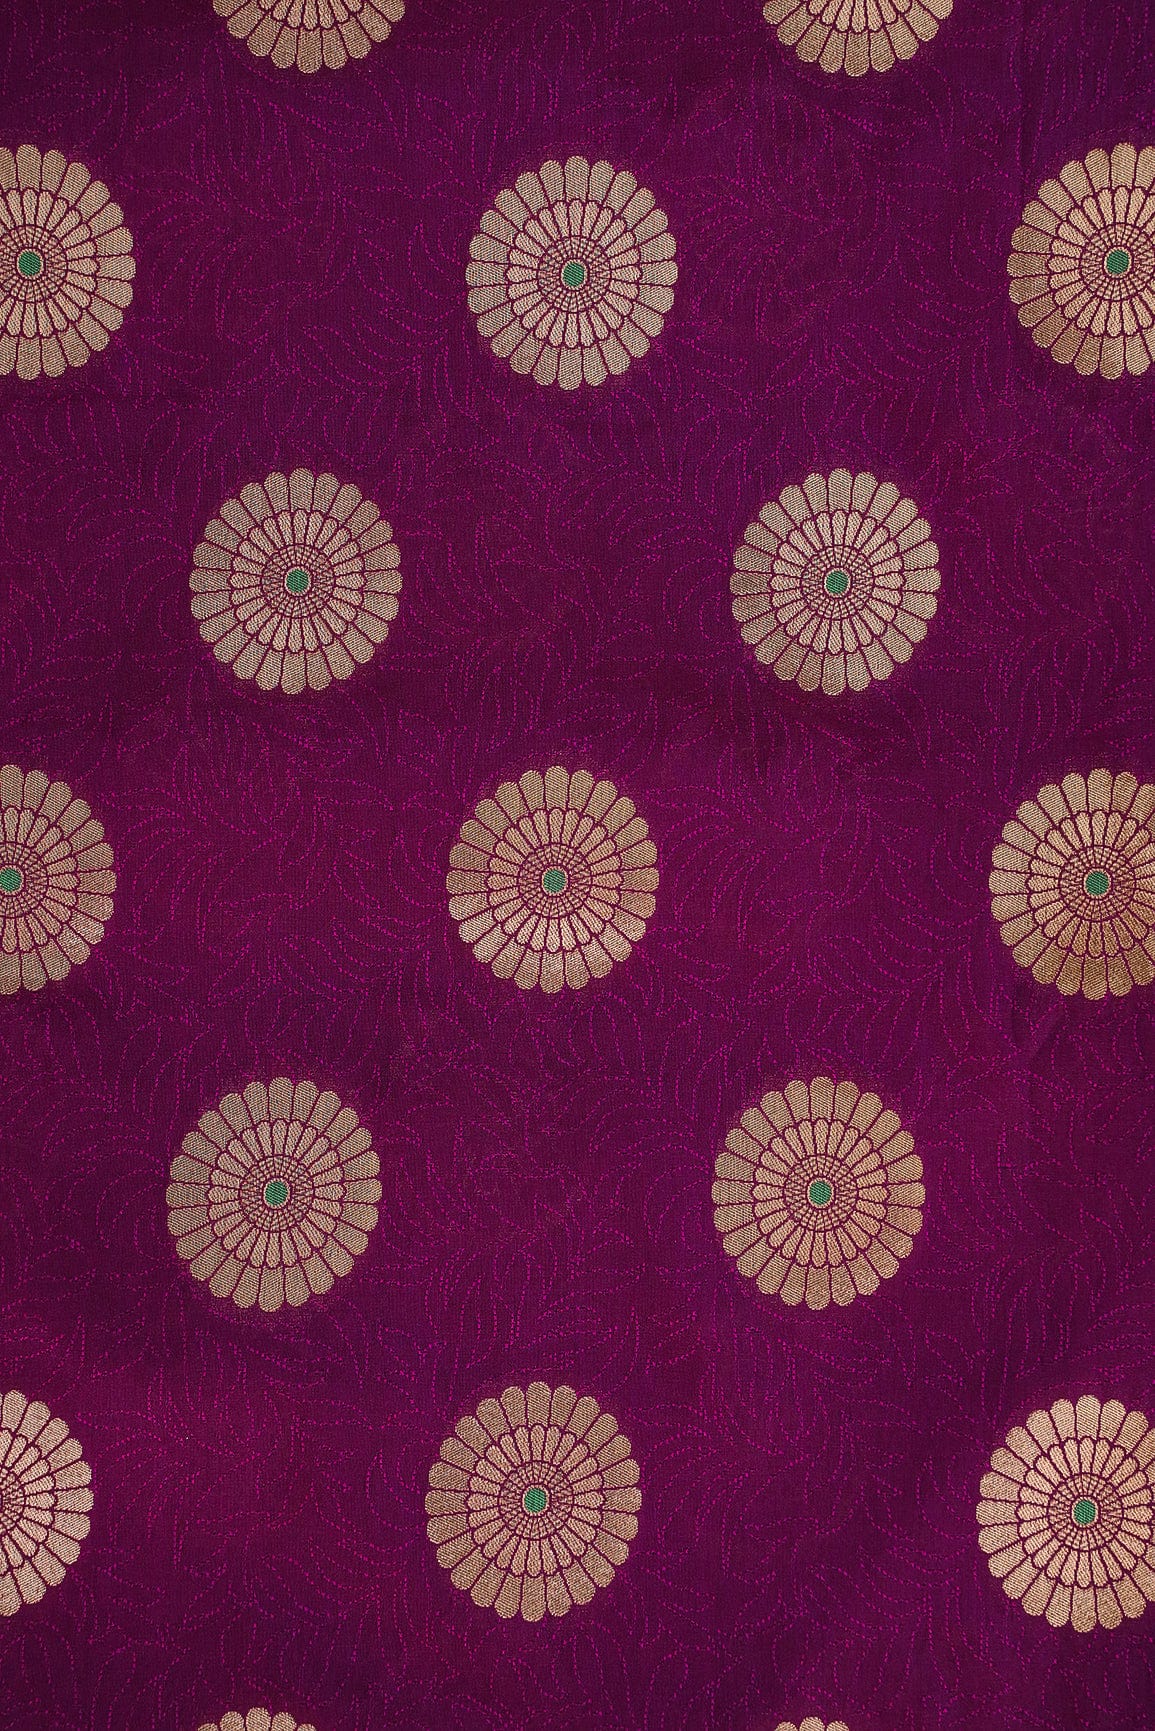 doeraa Banarasi Fabrics Purle and Gold Motif Banarasi Brocade Fabric